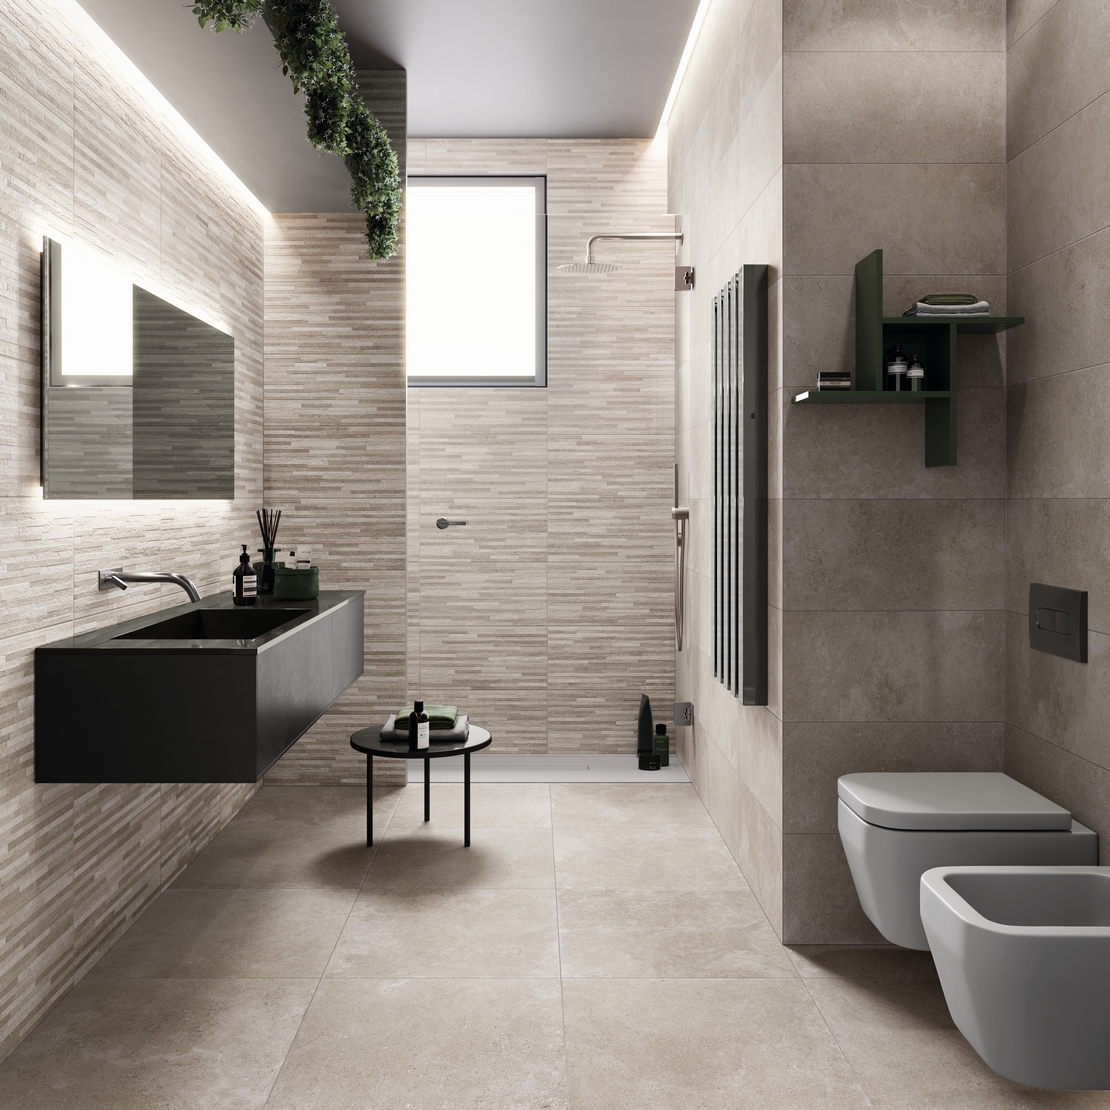 Langes, schmales, kleines, modernes Baezimmer mit Dusche. Minimalistische graue Steinoptik - Inspirationen Iperceramica